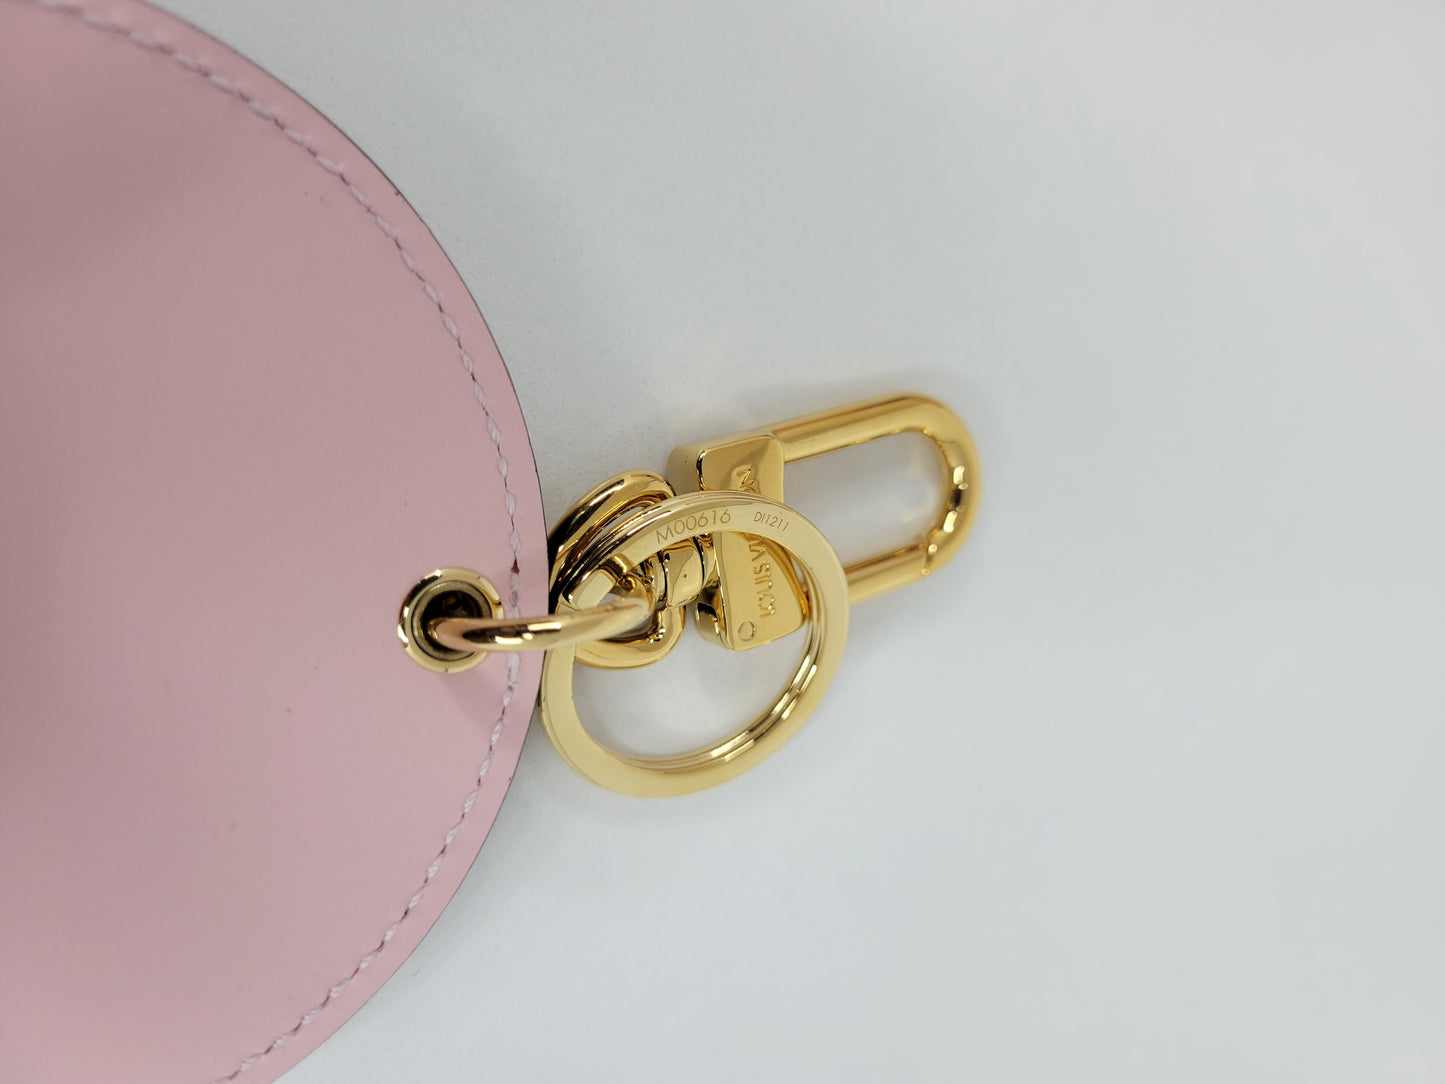 Louis Vuitton Vivienne Valentine bag charm & key holder Multiple colors  Leather Wood ref.255472 - Joli Closet